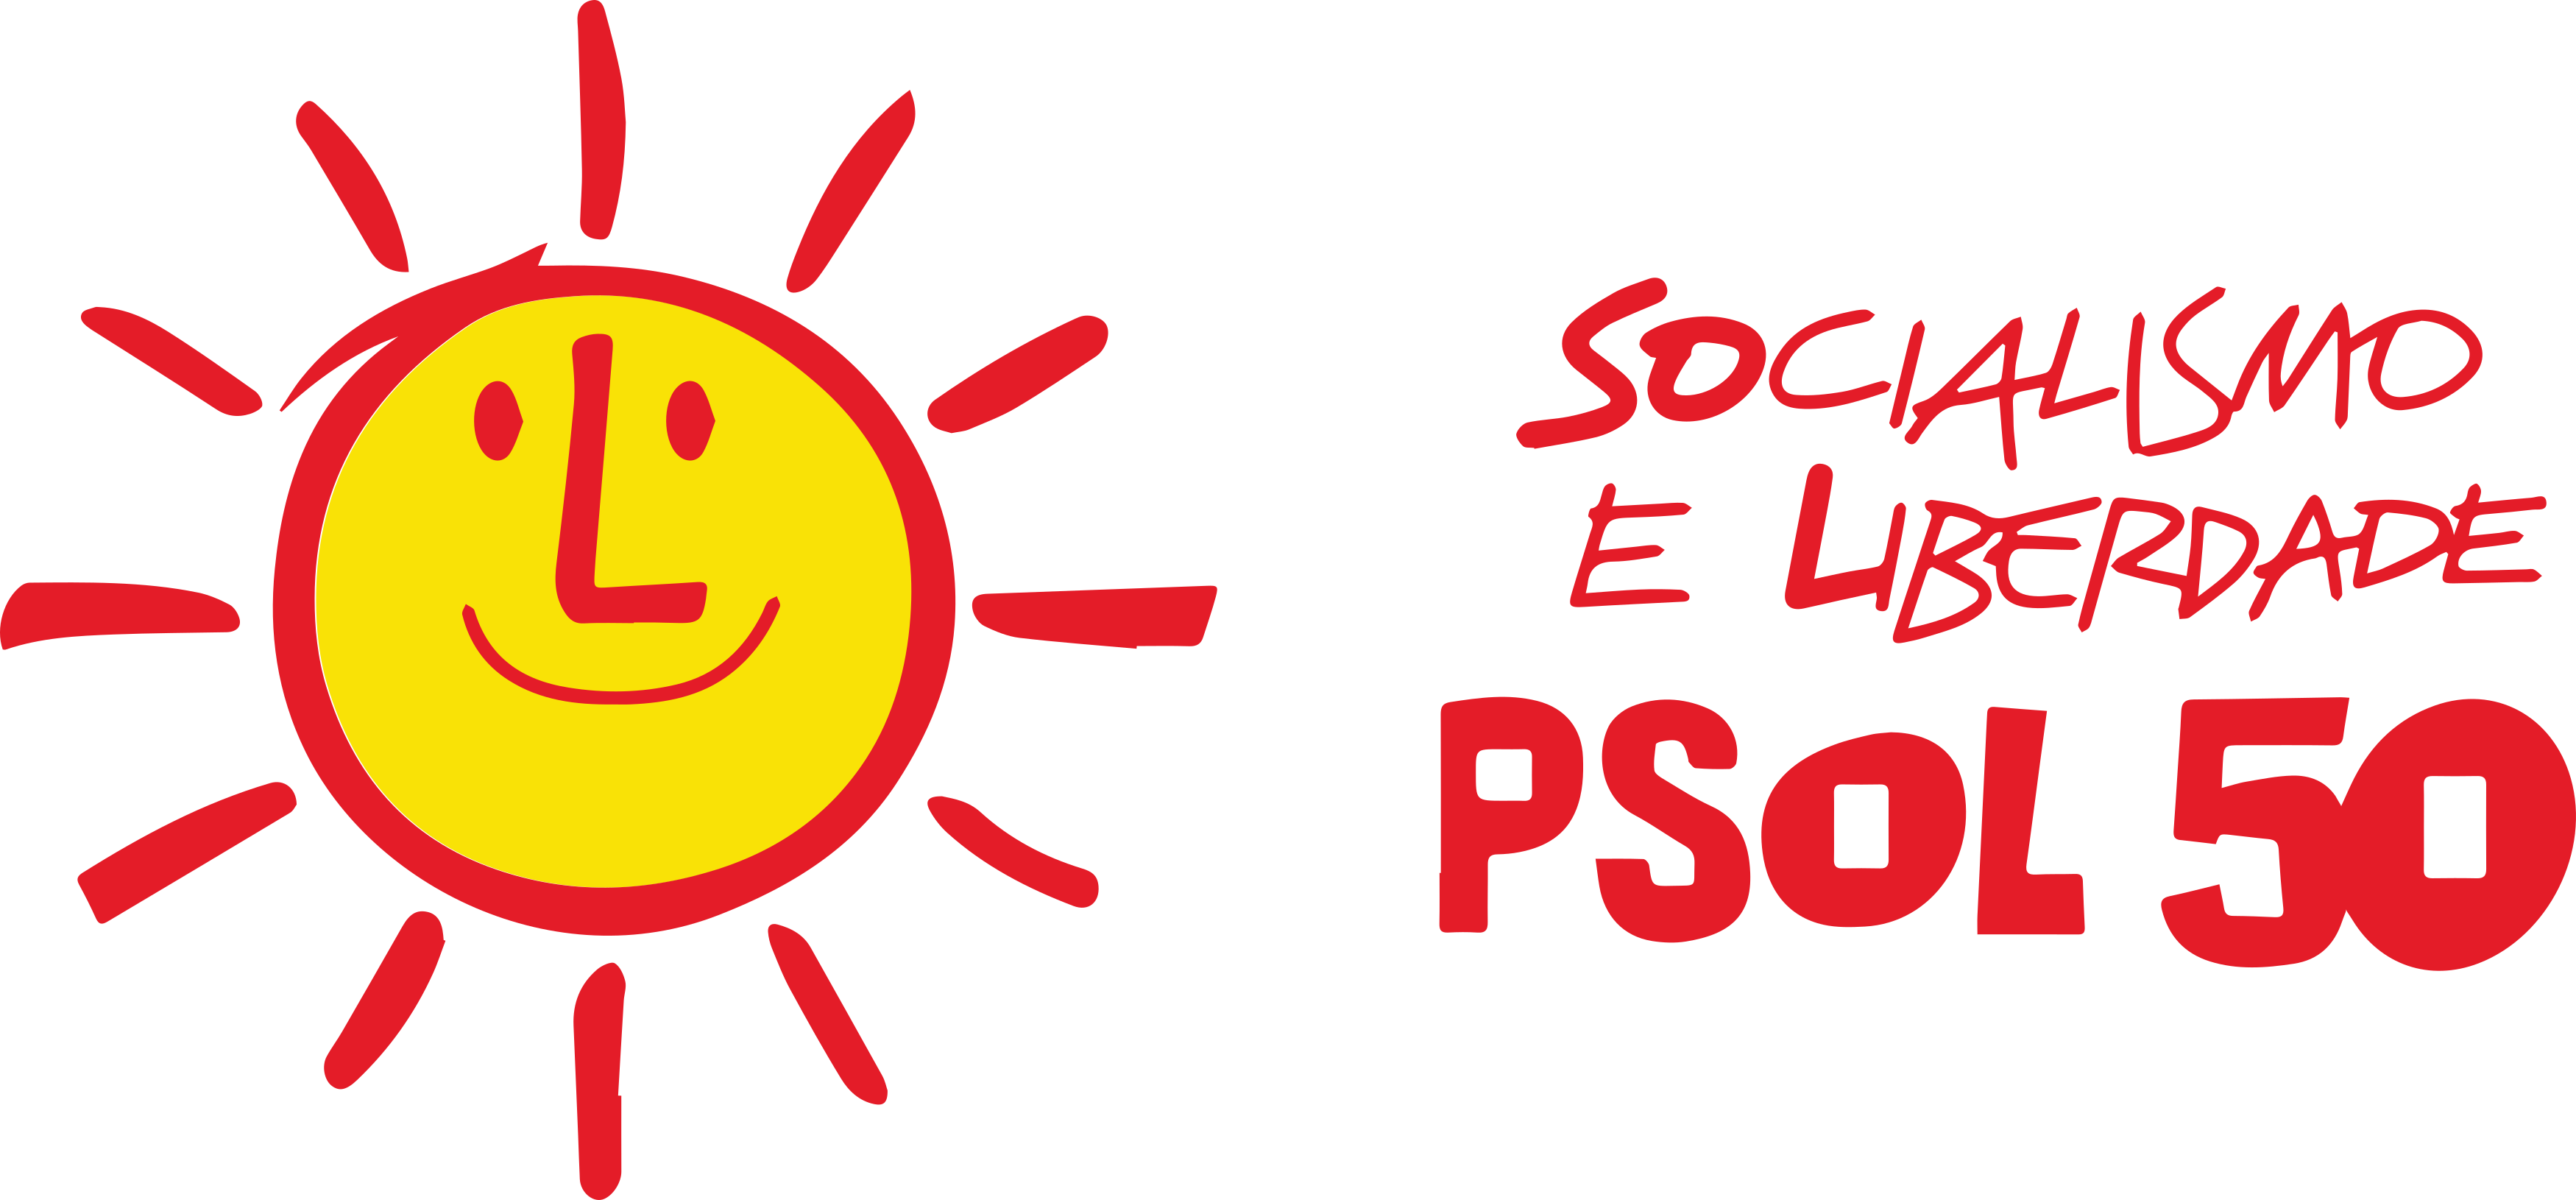 File:PSOL logo.png